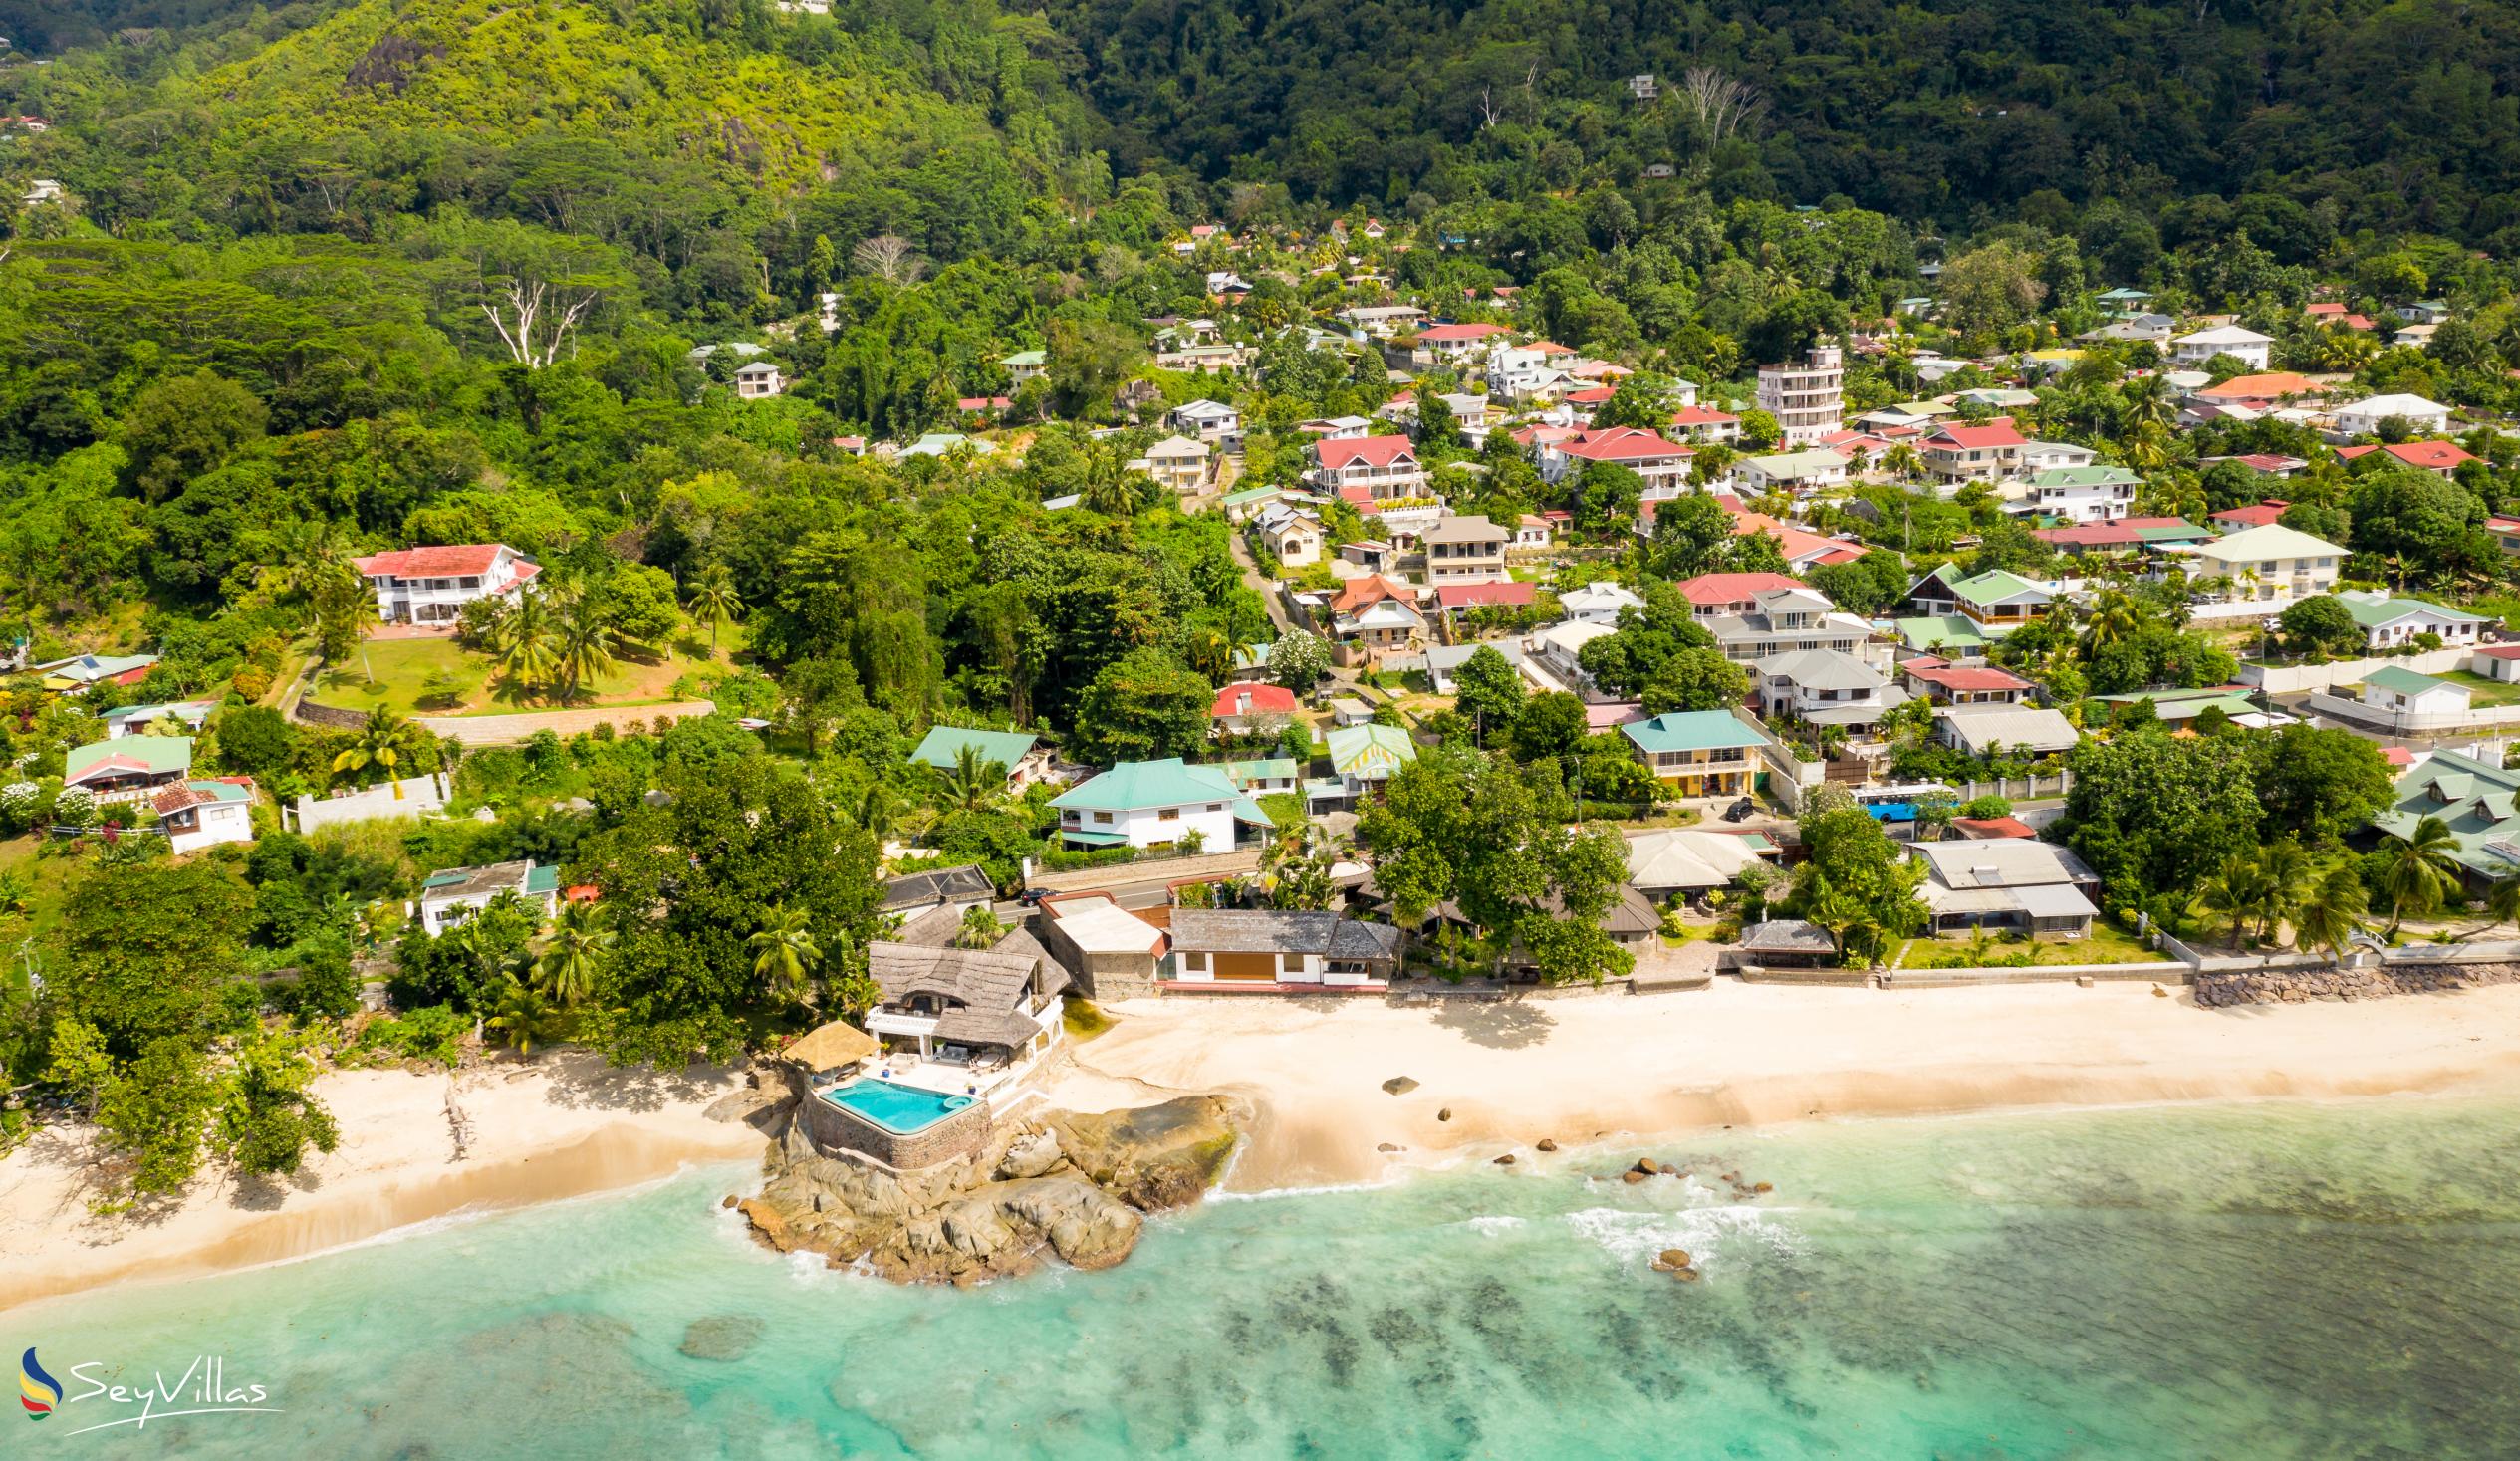 Foto 67: Villa Rousseau - Posizione - Mahé (Seychelles)